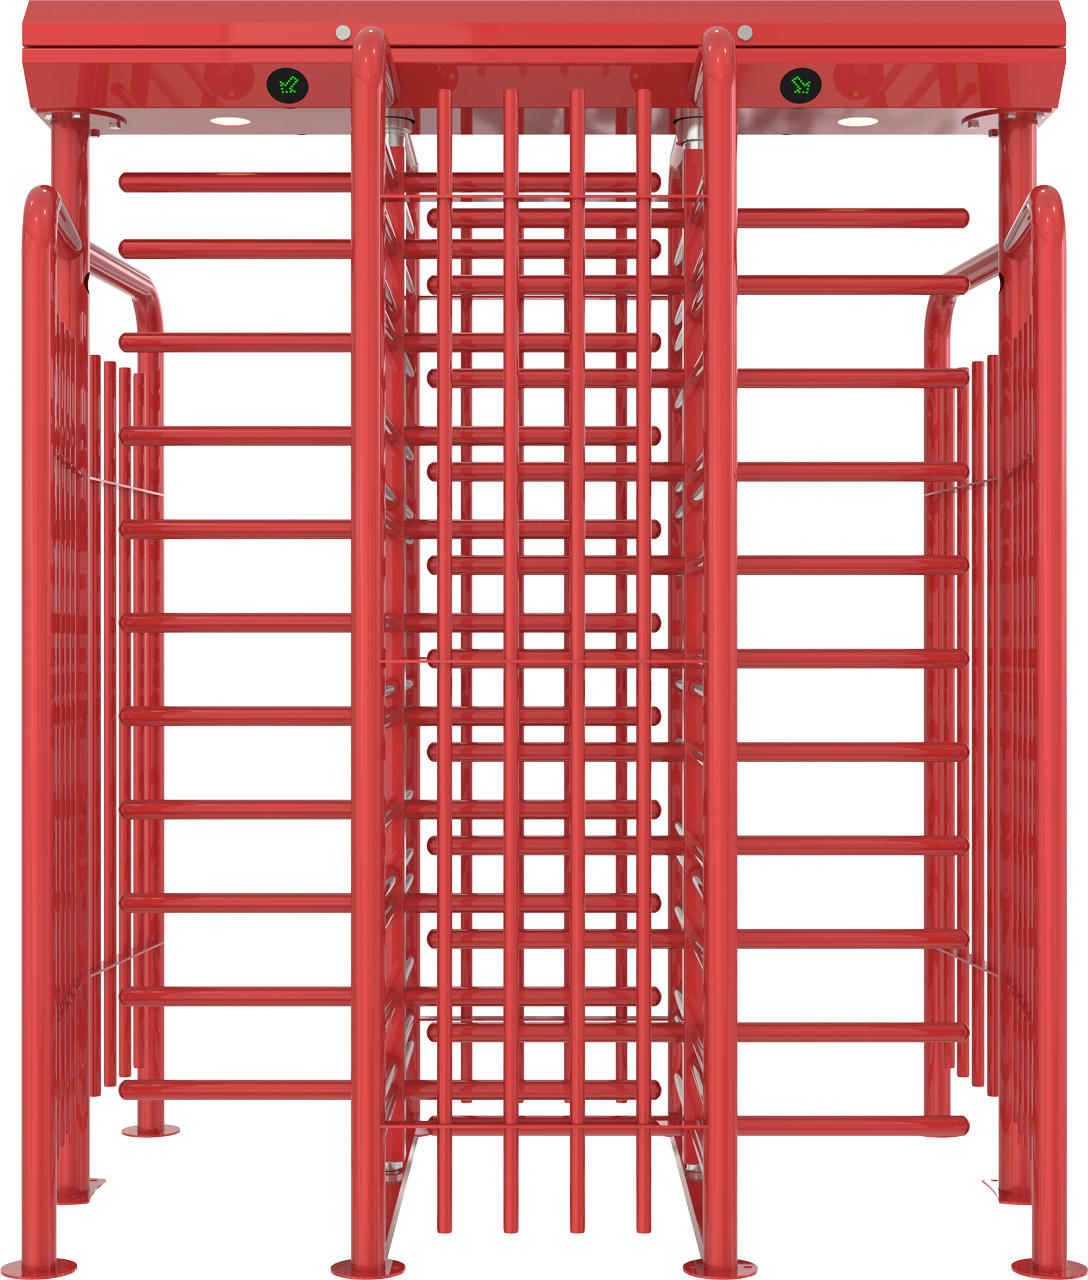 Turnicheți verticali full-height cu două pasaje de trecere Came Ozak BTX400 N1 D